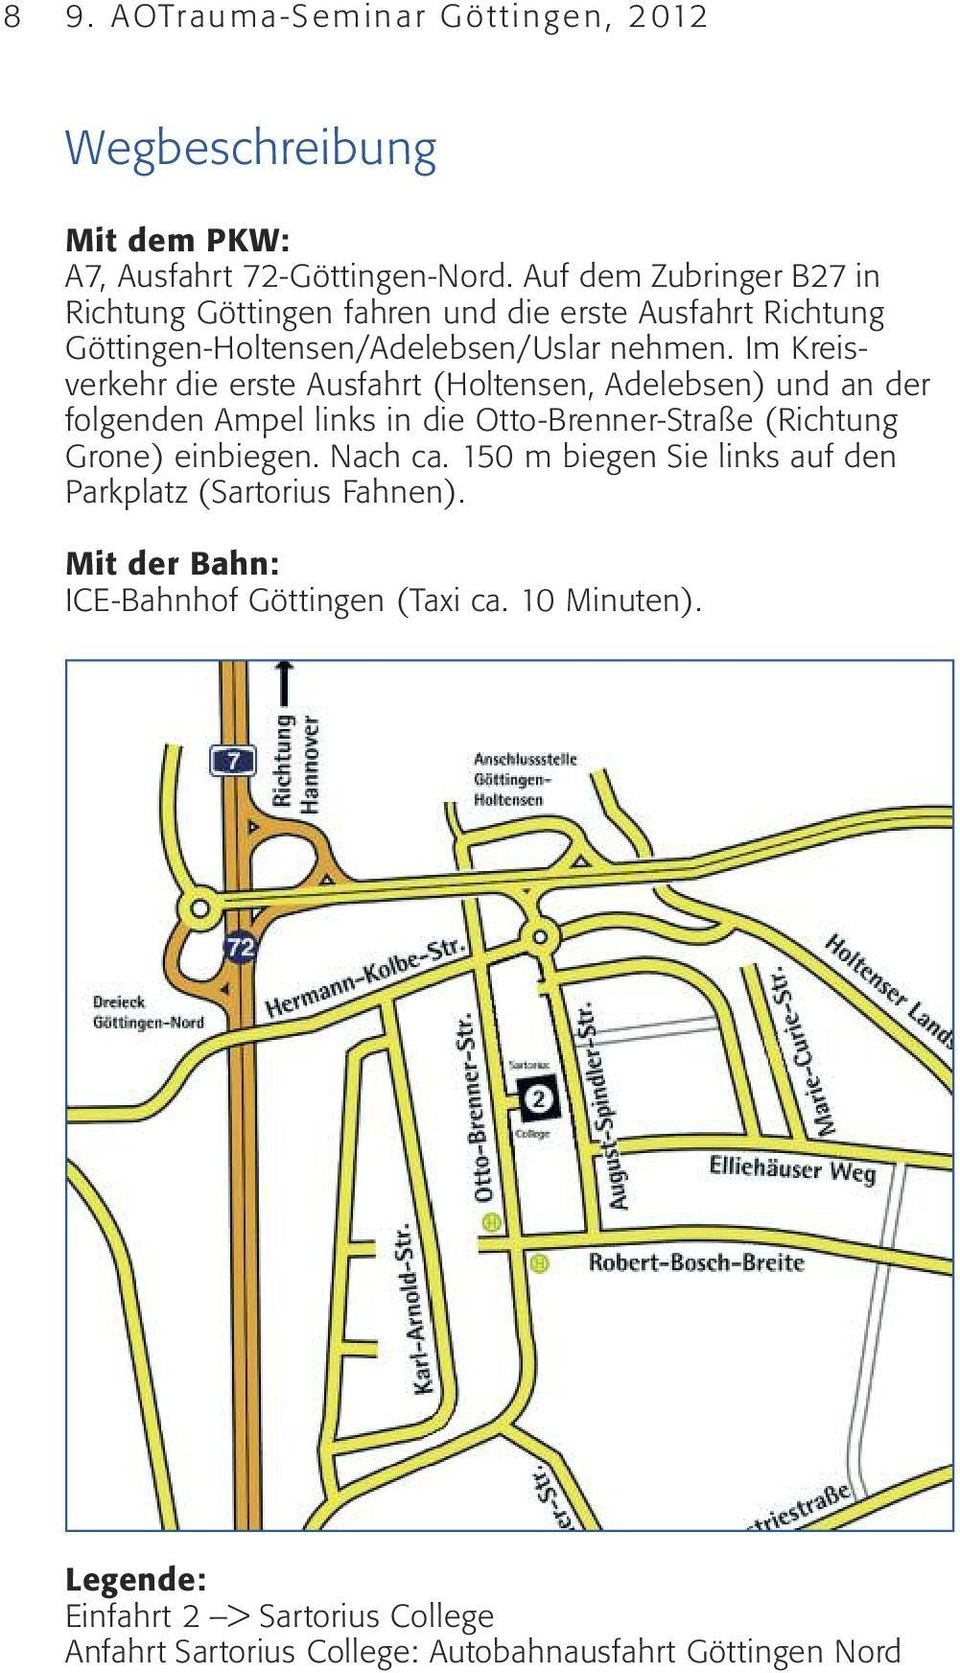 Im Kreis - verkehr die erste Ausfahrt (Holtensen, Adelebsen) und an der folgenden Ampel links in die Otto-Brenner-Straße (Richtung Grone) einbiegen.